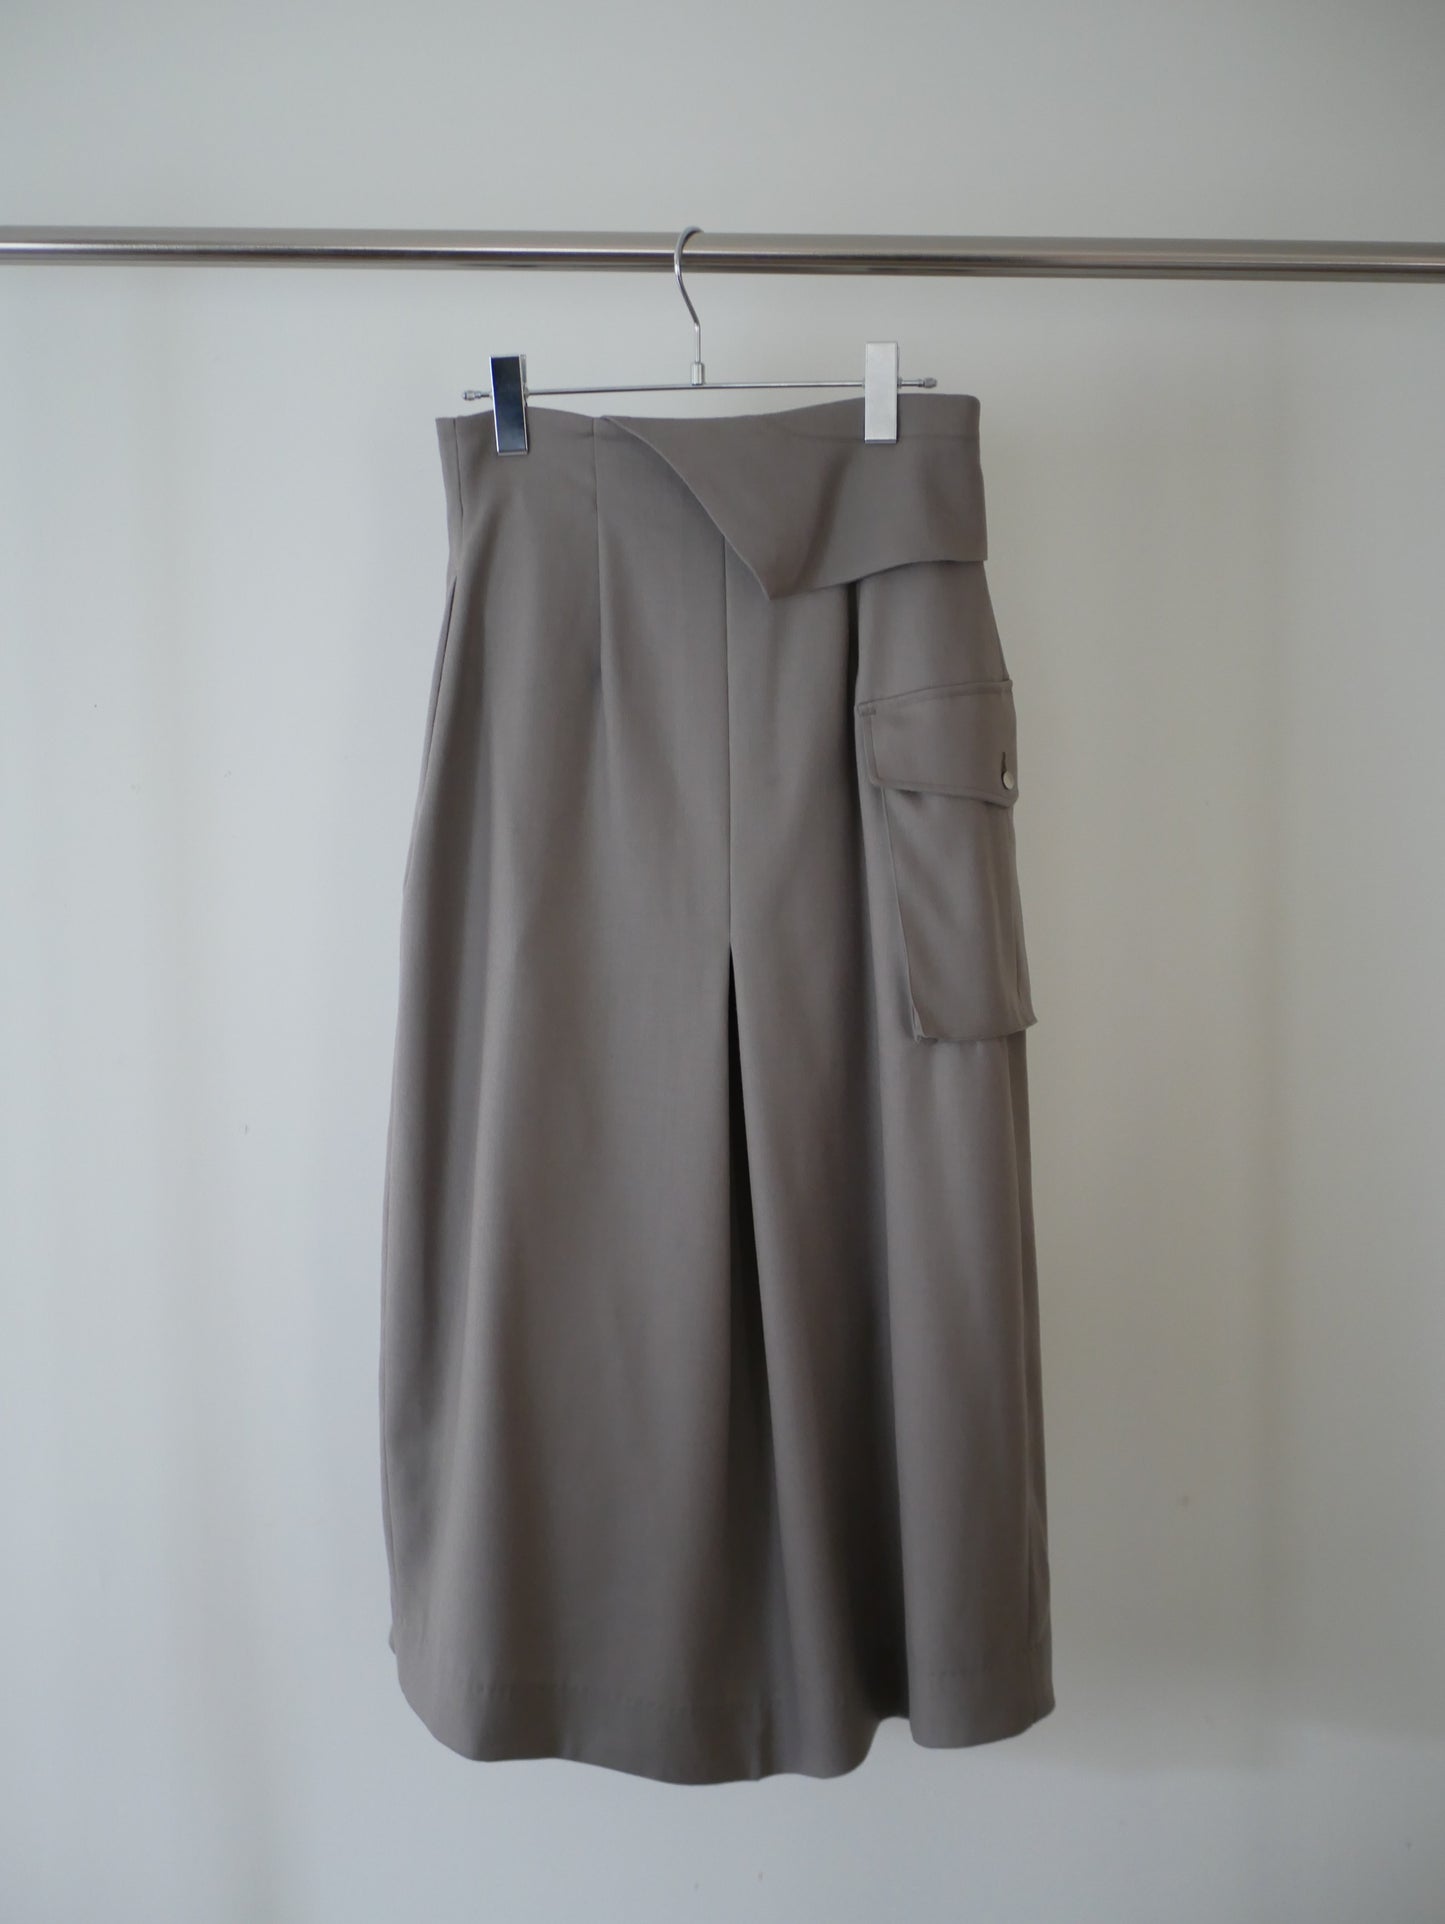 〔rich〕 Handkerchief rap skirt&cape